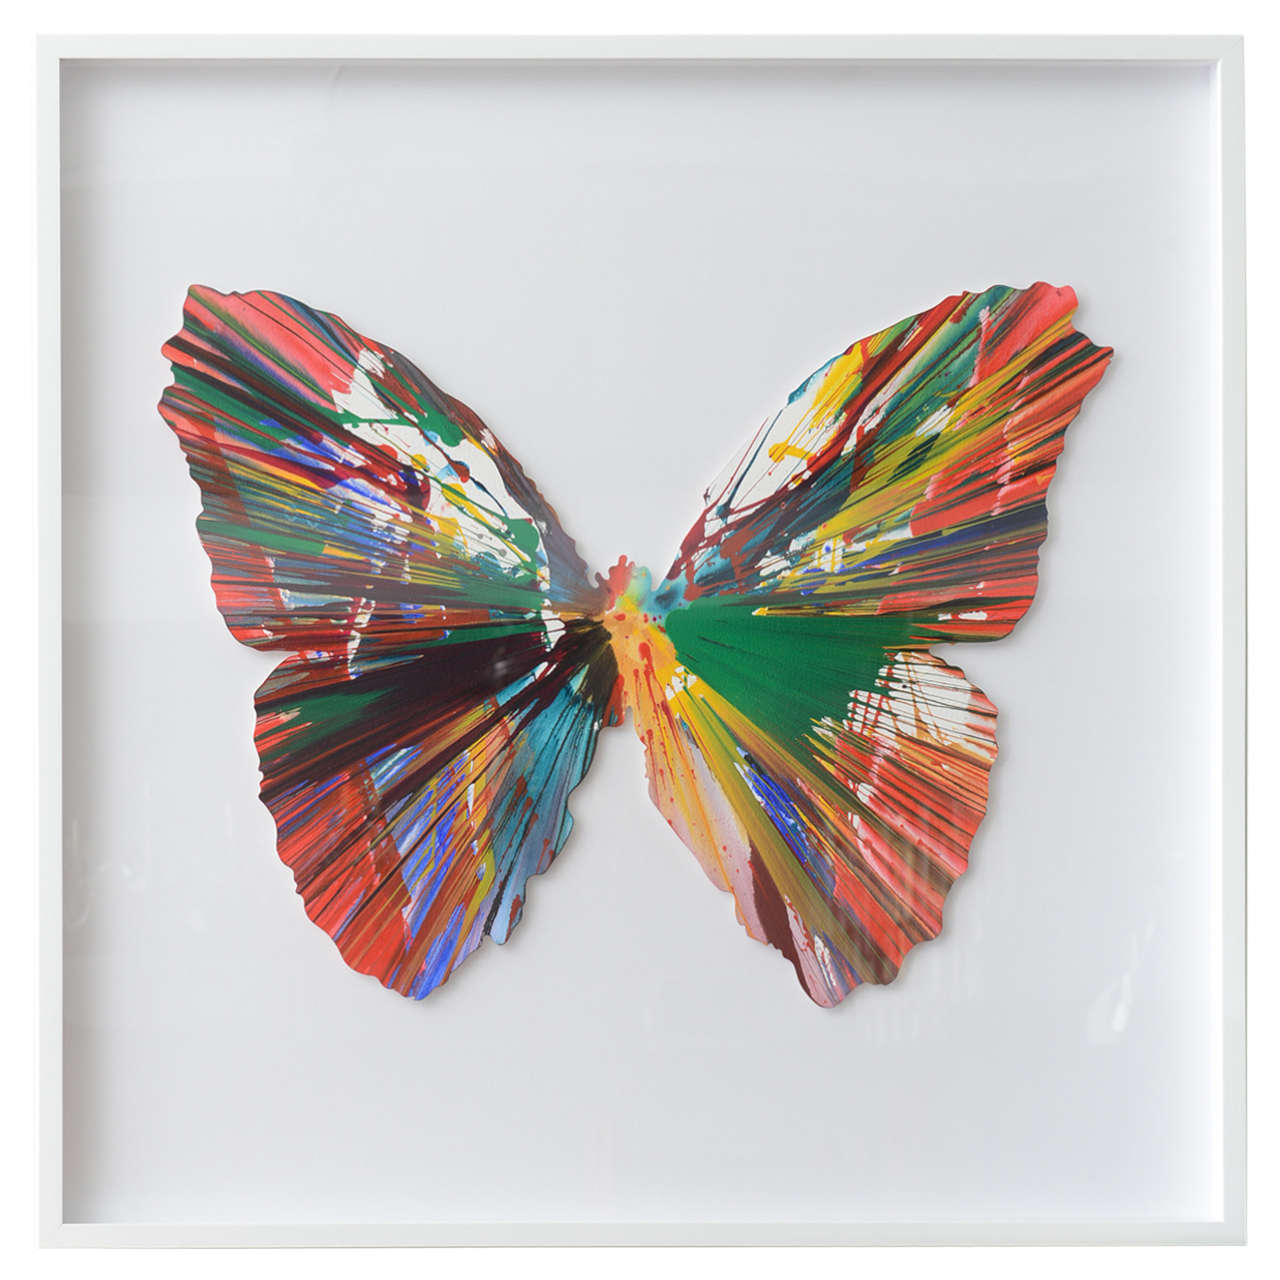 Damien Hirst Spin Art Butterfly, Ukraine, 2009